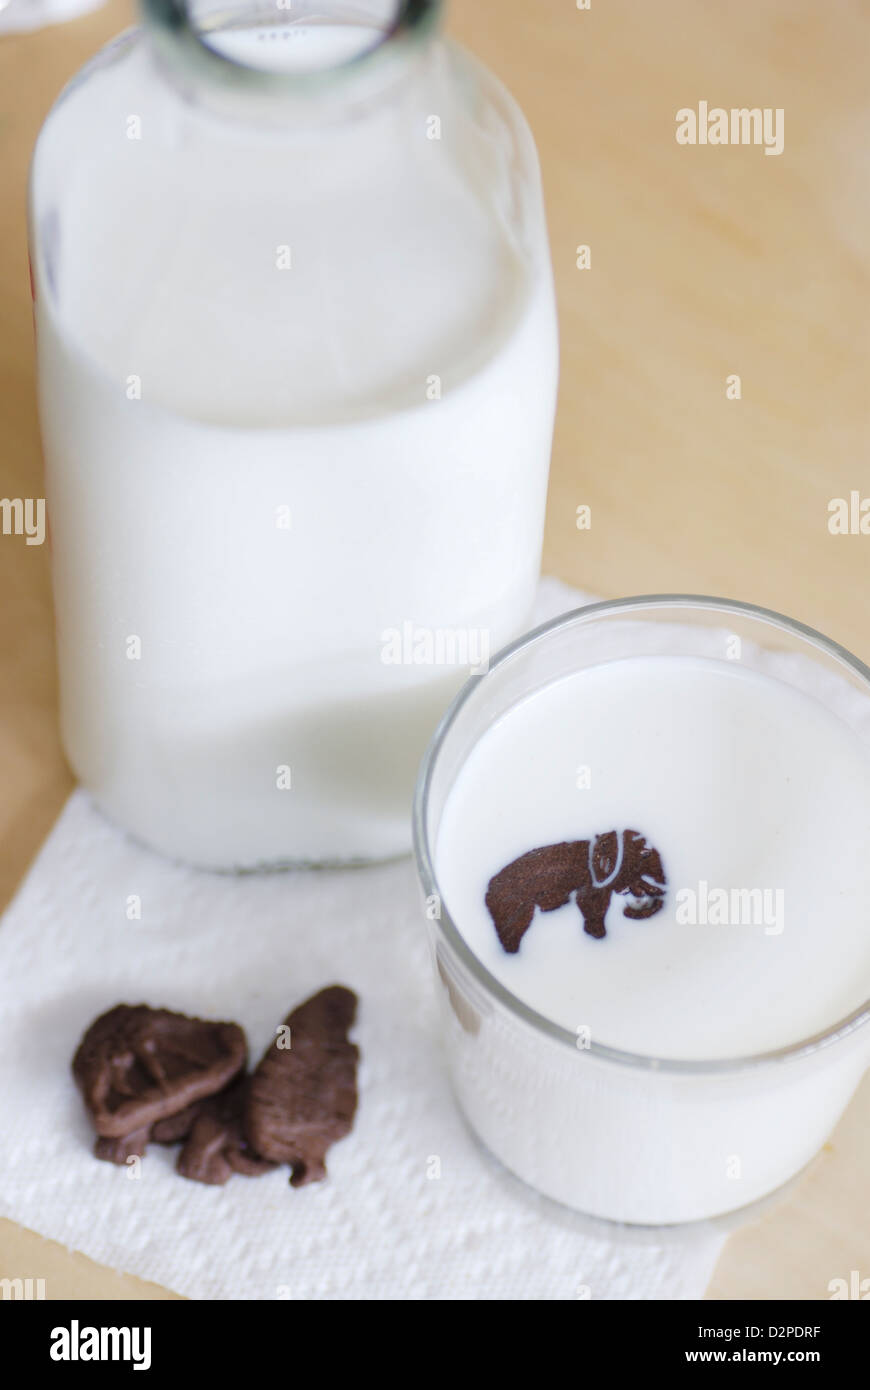 Schokolade Tier geformte Plätzchen mit Flasche und Glas Kühe Milch vertikale Ansicht von oben mit Elefanten Cookie schwebend in Milch Stockfoto